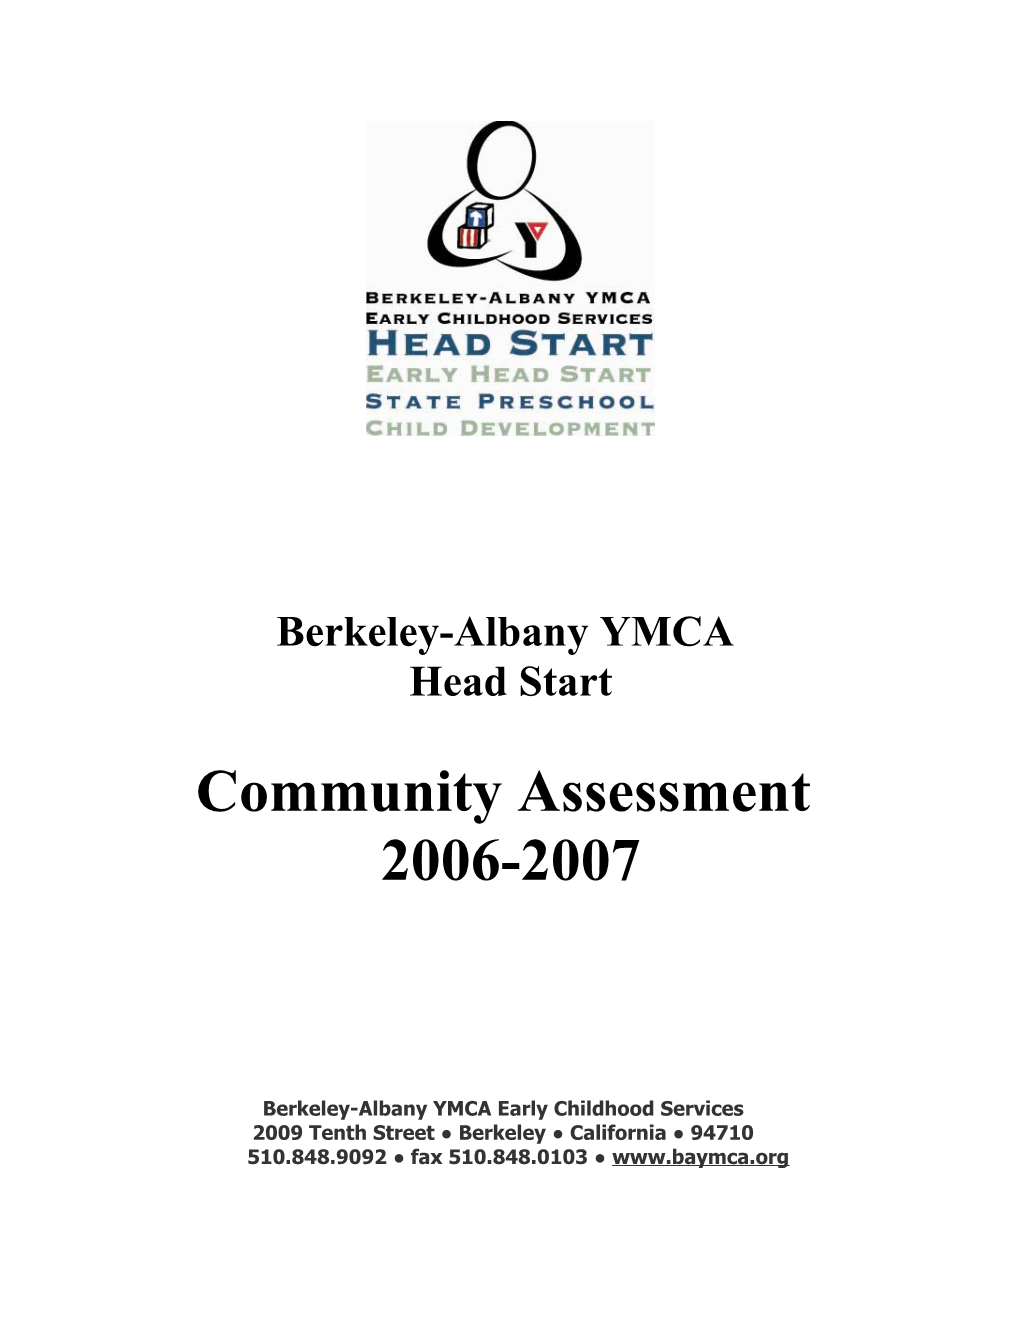 Community Assessment 2006-2007